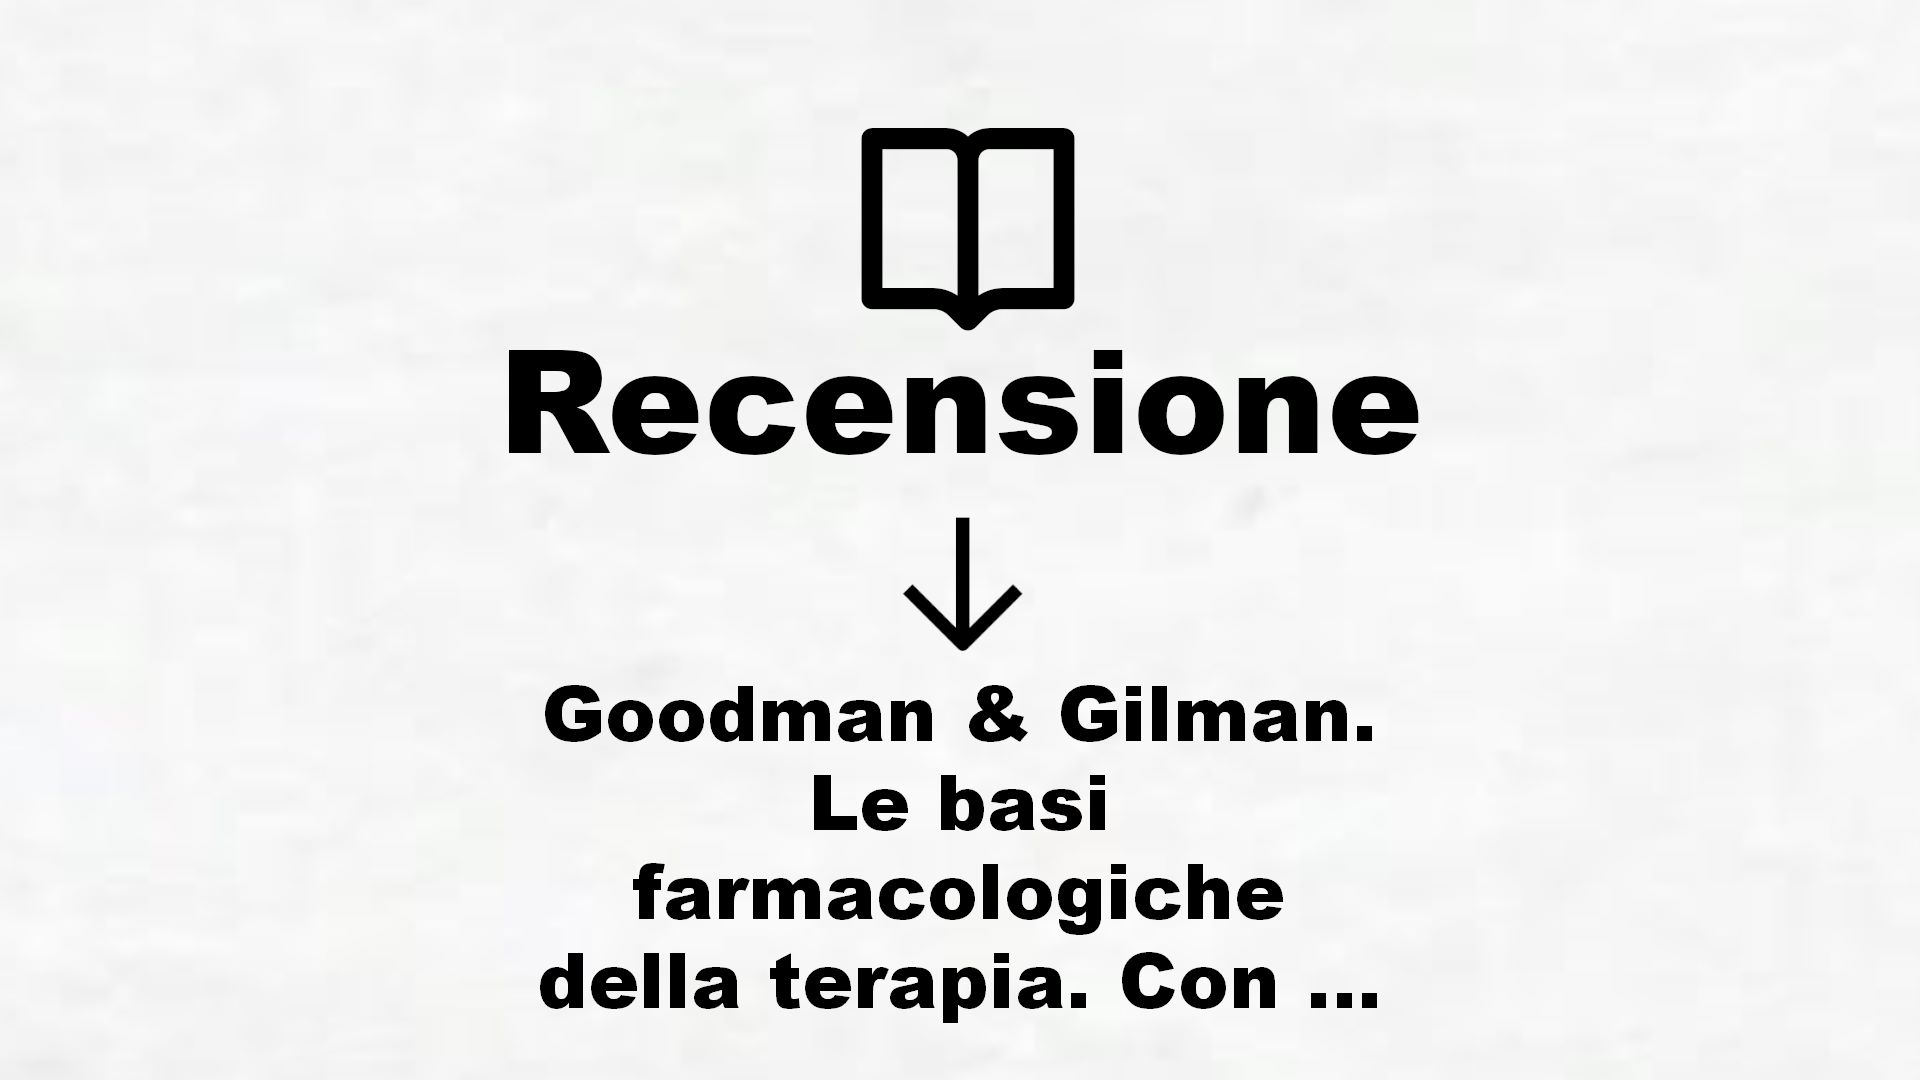 Goodman & Gilman. Le basi farmacologiche della terapia. Con espansione online – Recensione Libro